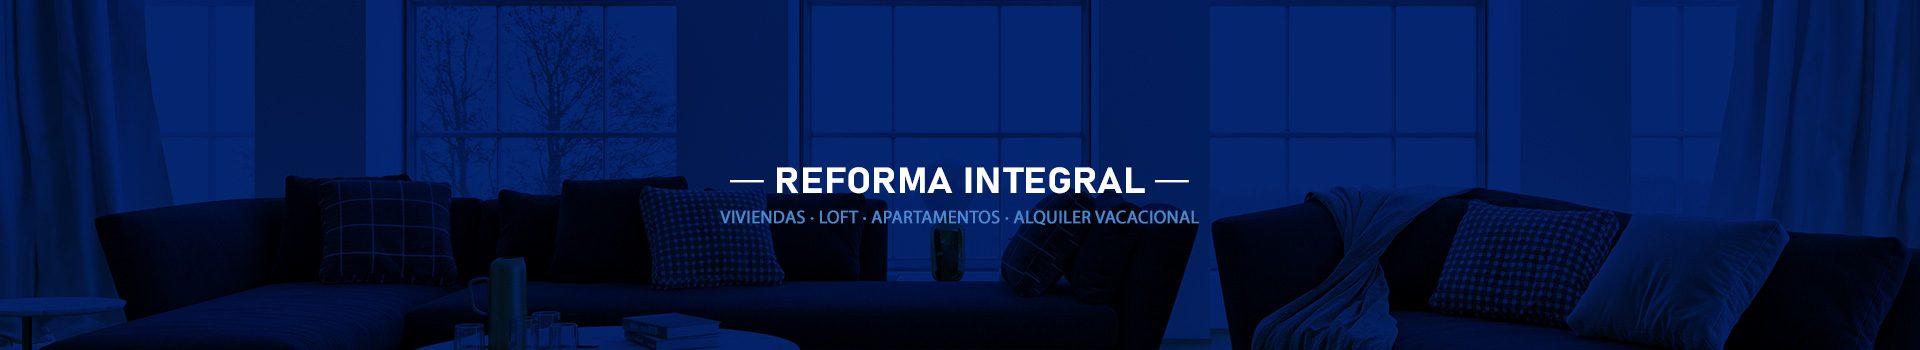 Reformas de Lujo en Madrid. Reformas integrales de vivienda en Madrid